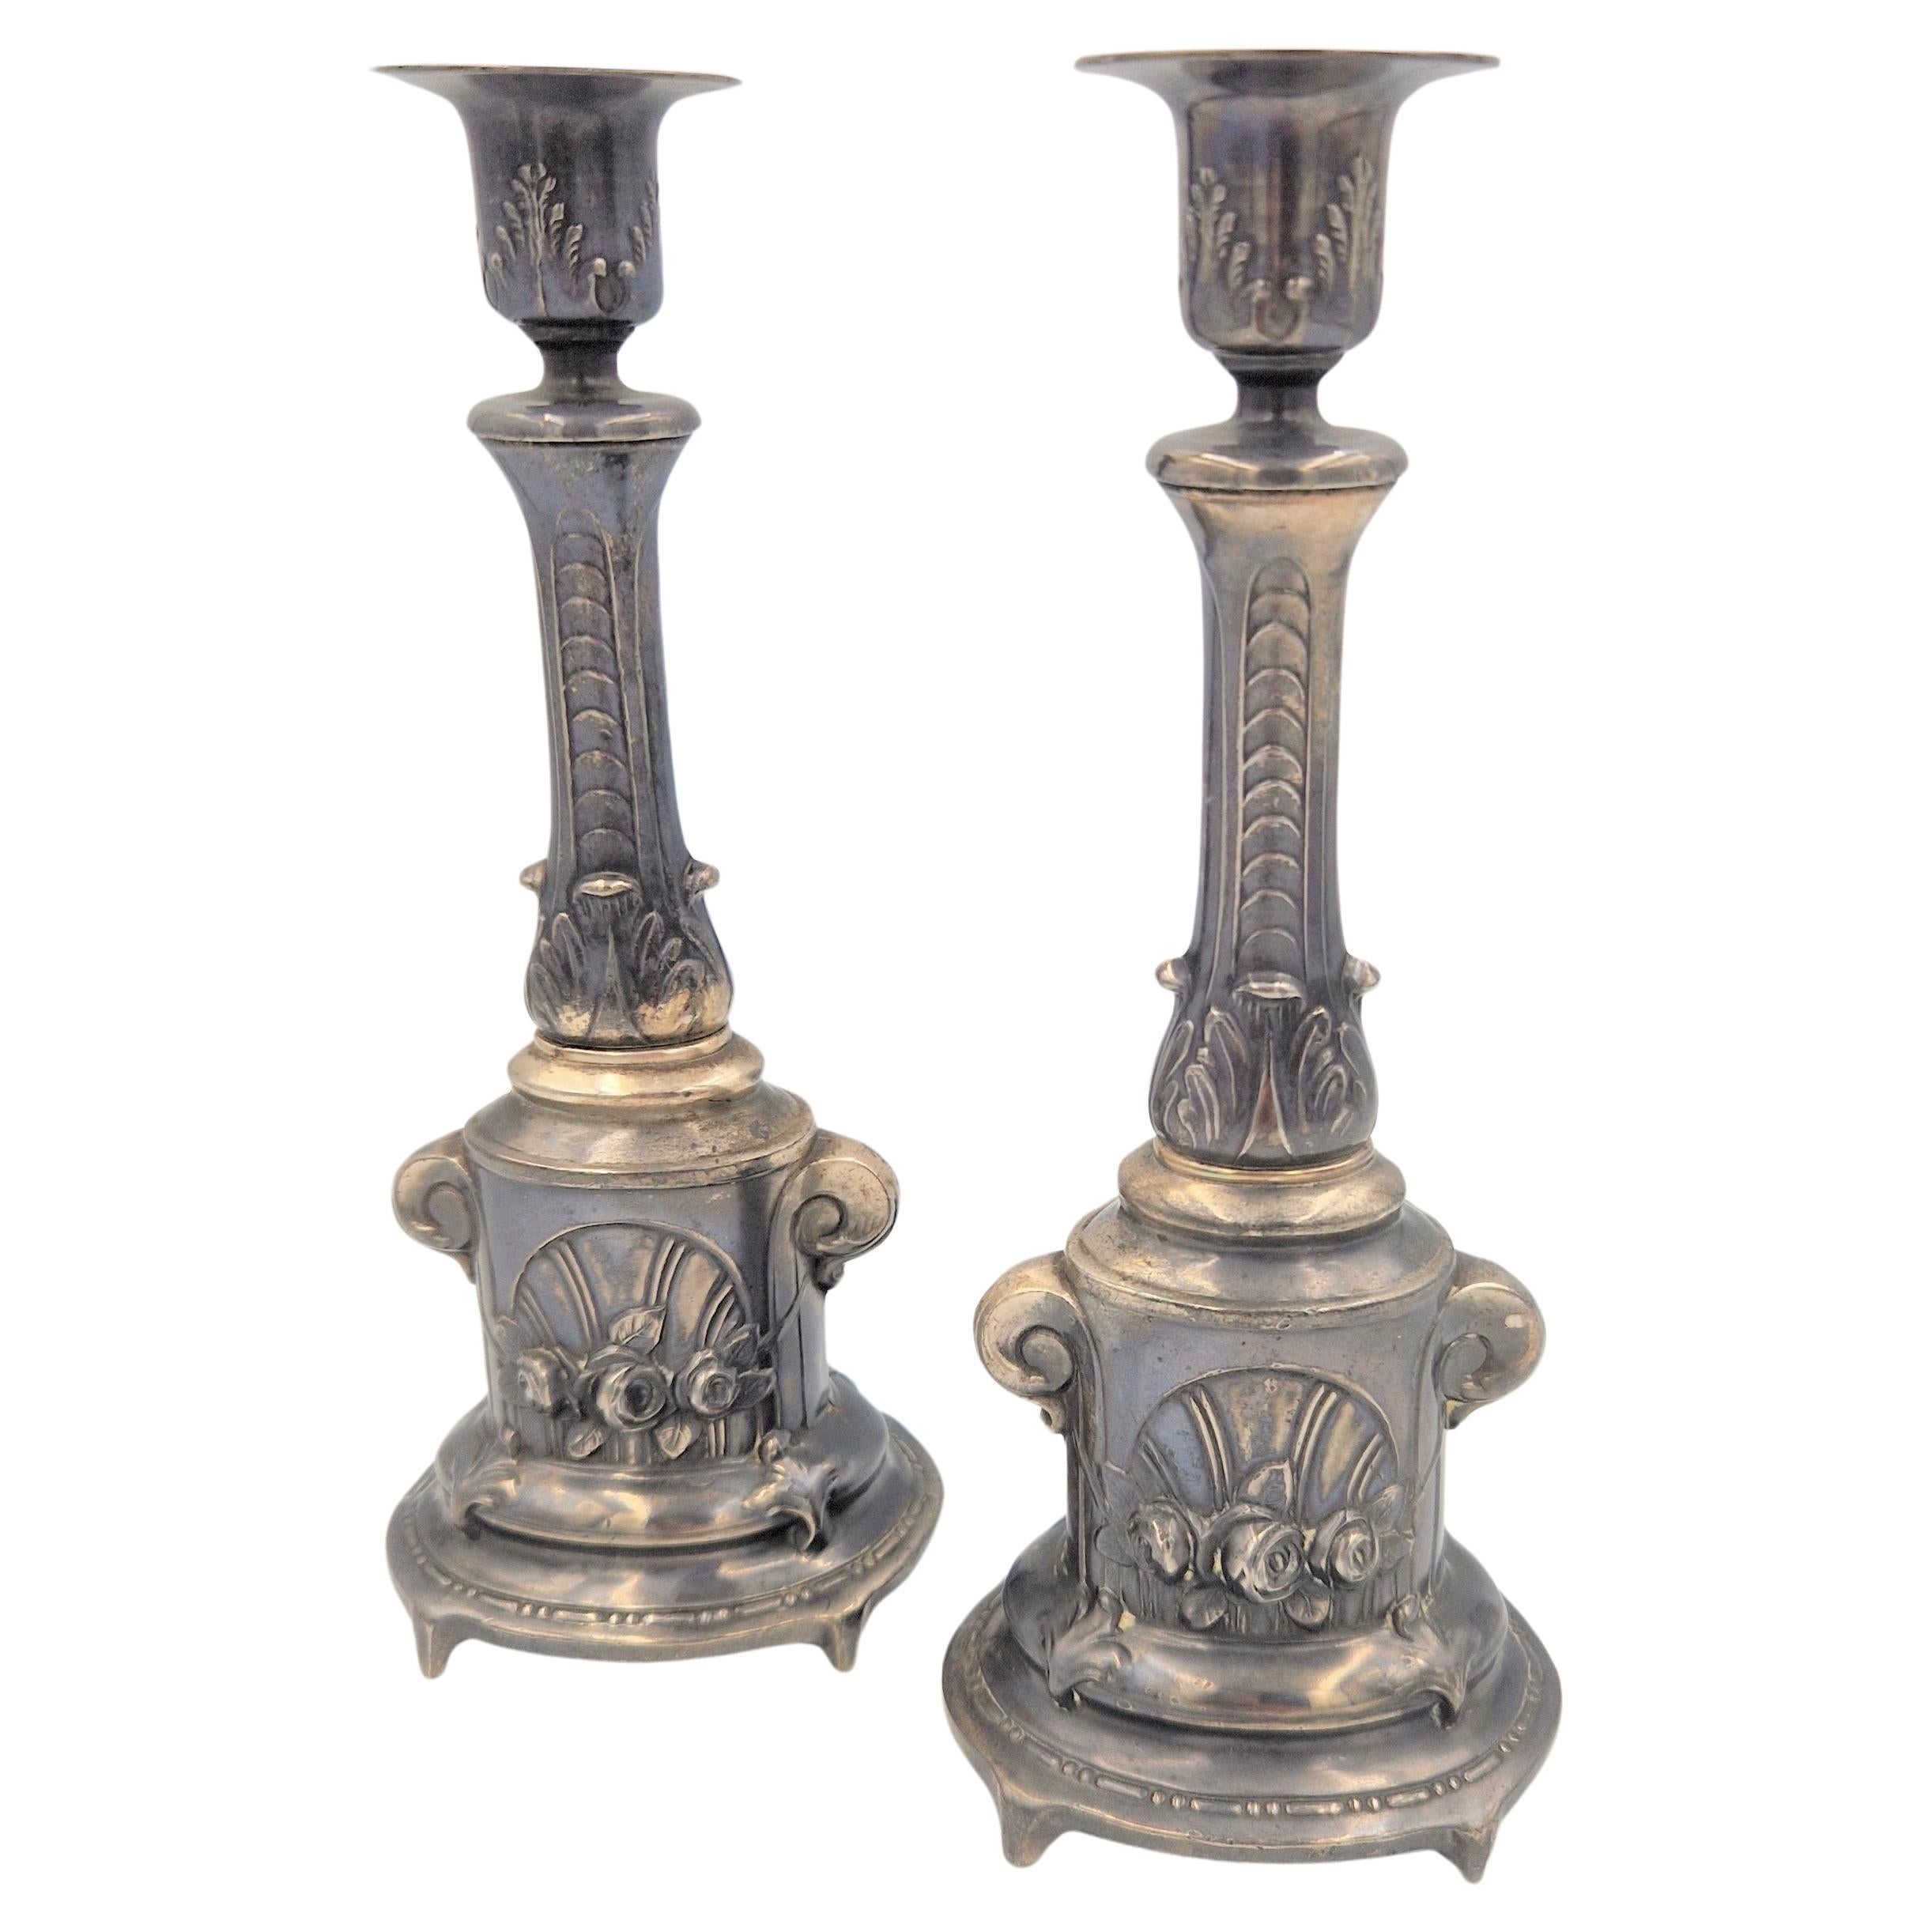 Zwei versilberte Kerzenständer des Historismus. 1850 - 1880